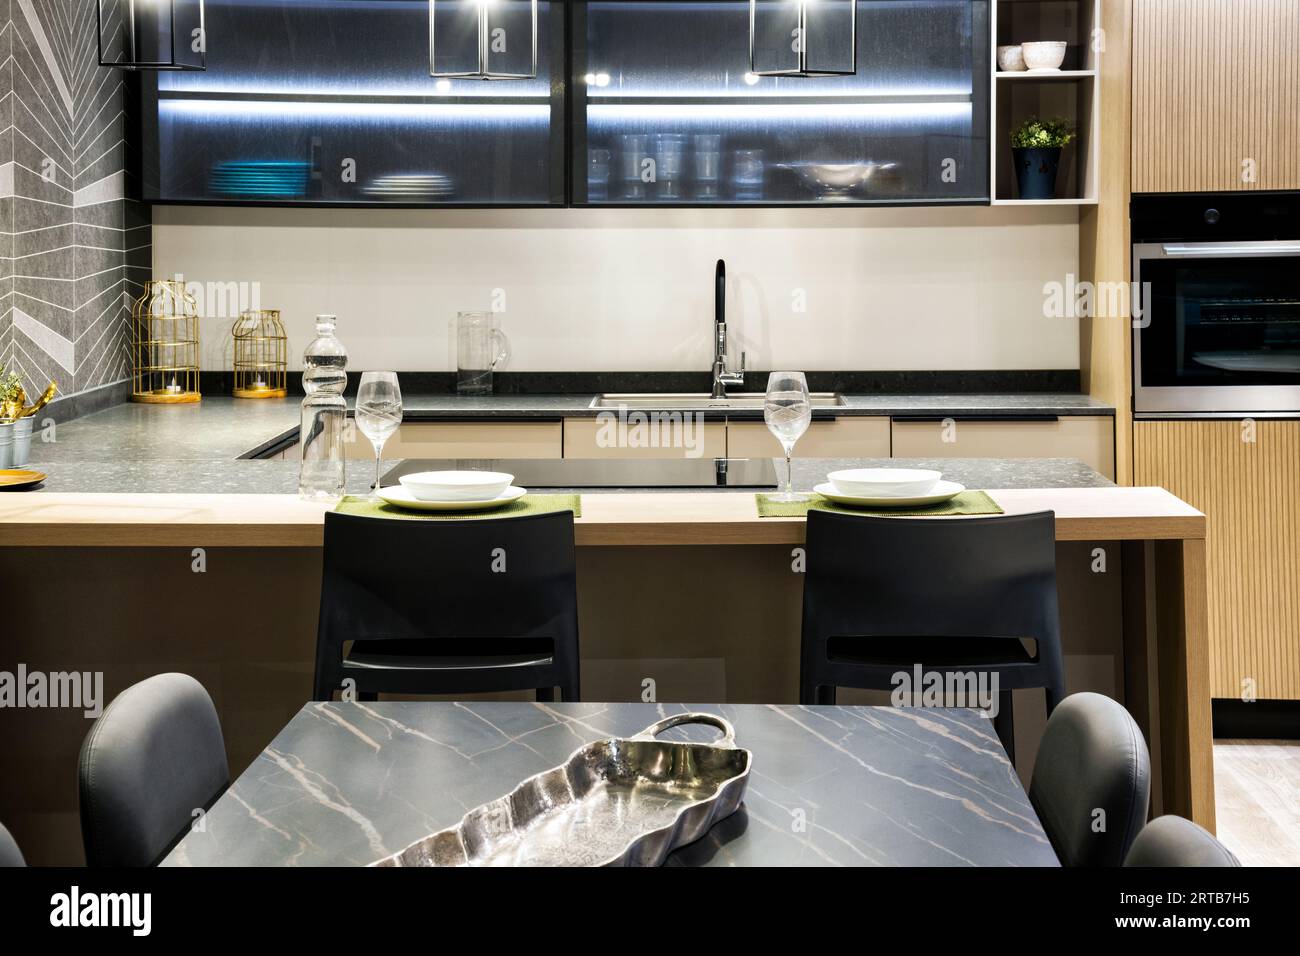 Intérieur de la cuisine moderne meublée avec des appareils intégrés étagères de four ustensiles de cuisine bouteille d'eau potable verres transparents près du poêle tandis que dini Banque D'Images